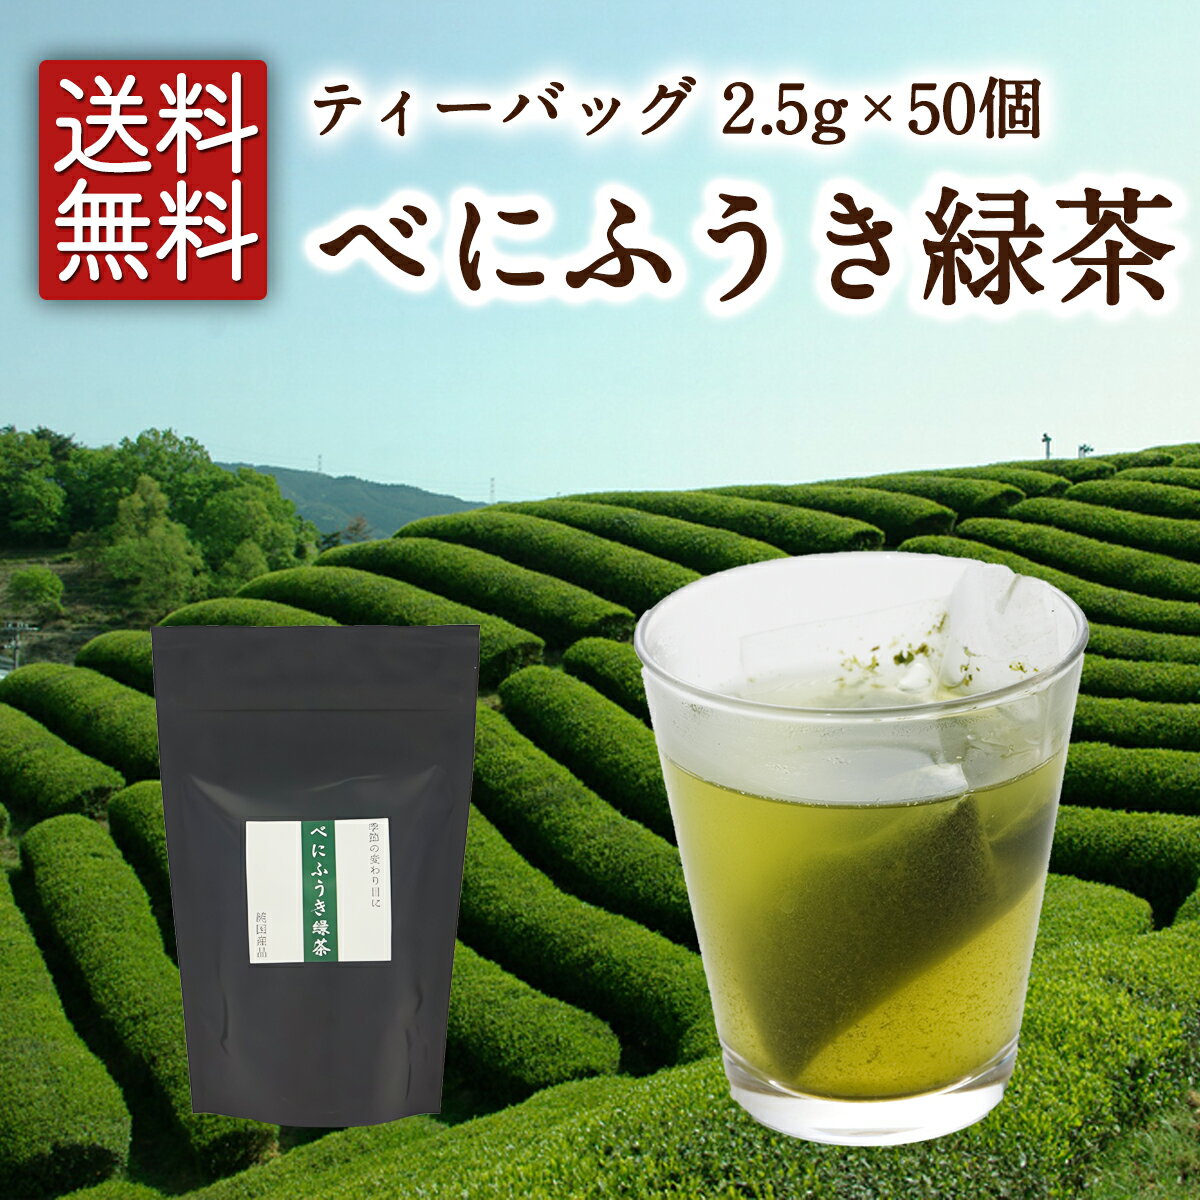 べにふうき緑茶 ティーバッグ 2.5g×25個入 べにふうき緑茶 べにふうき茶 緑茶 お茶 日本茶 京都 ティーバッグ